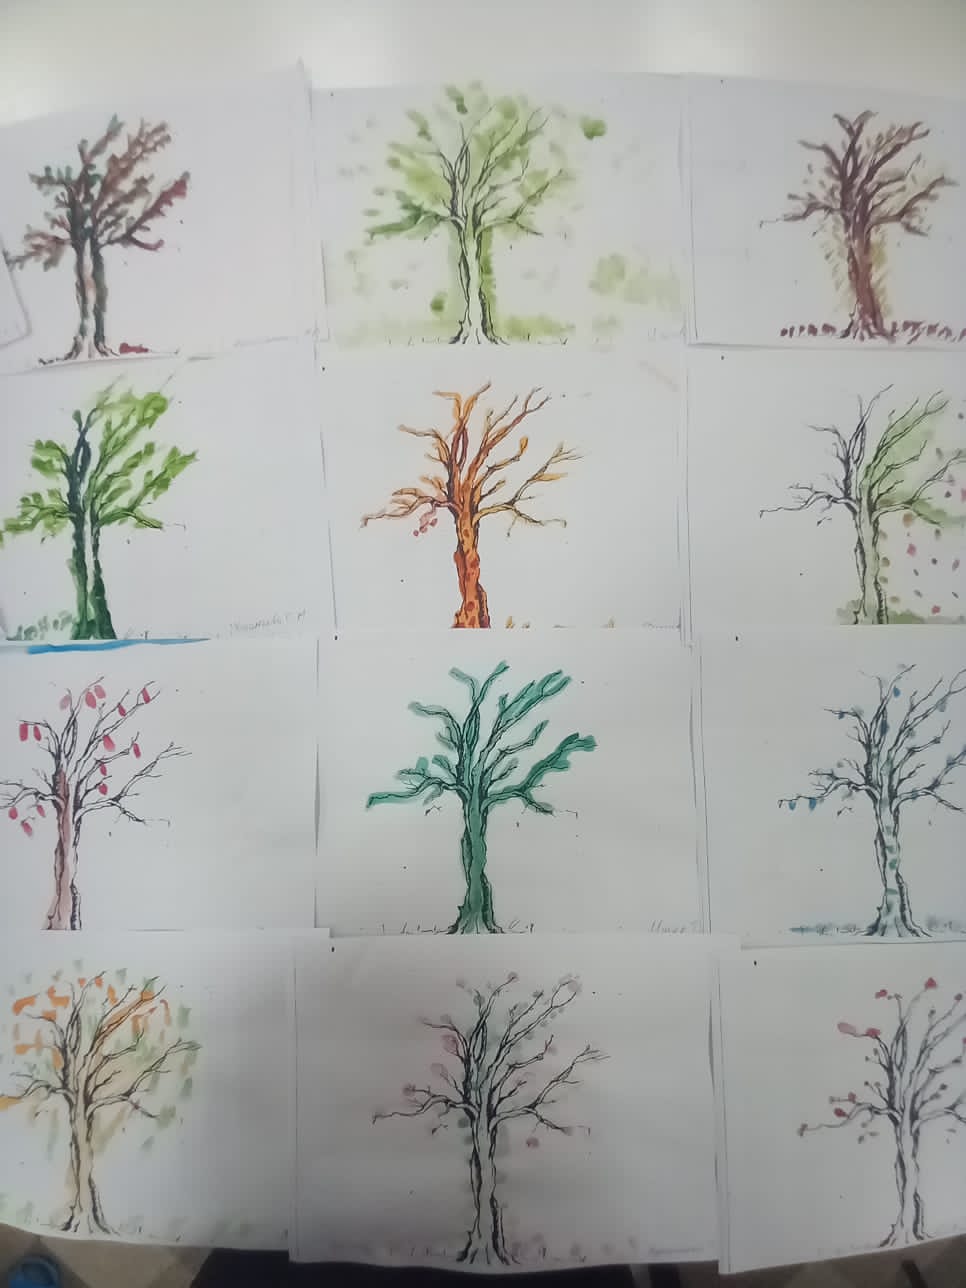 Творческое занятие с пожилыми "Оживи дерево" в пансионате "Ялта"